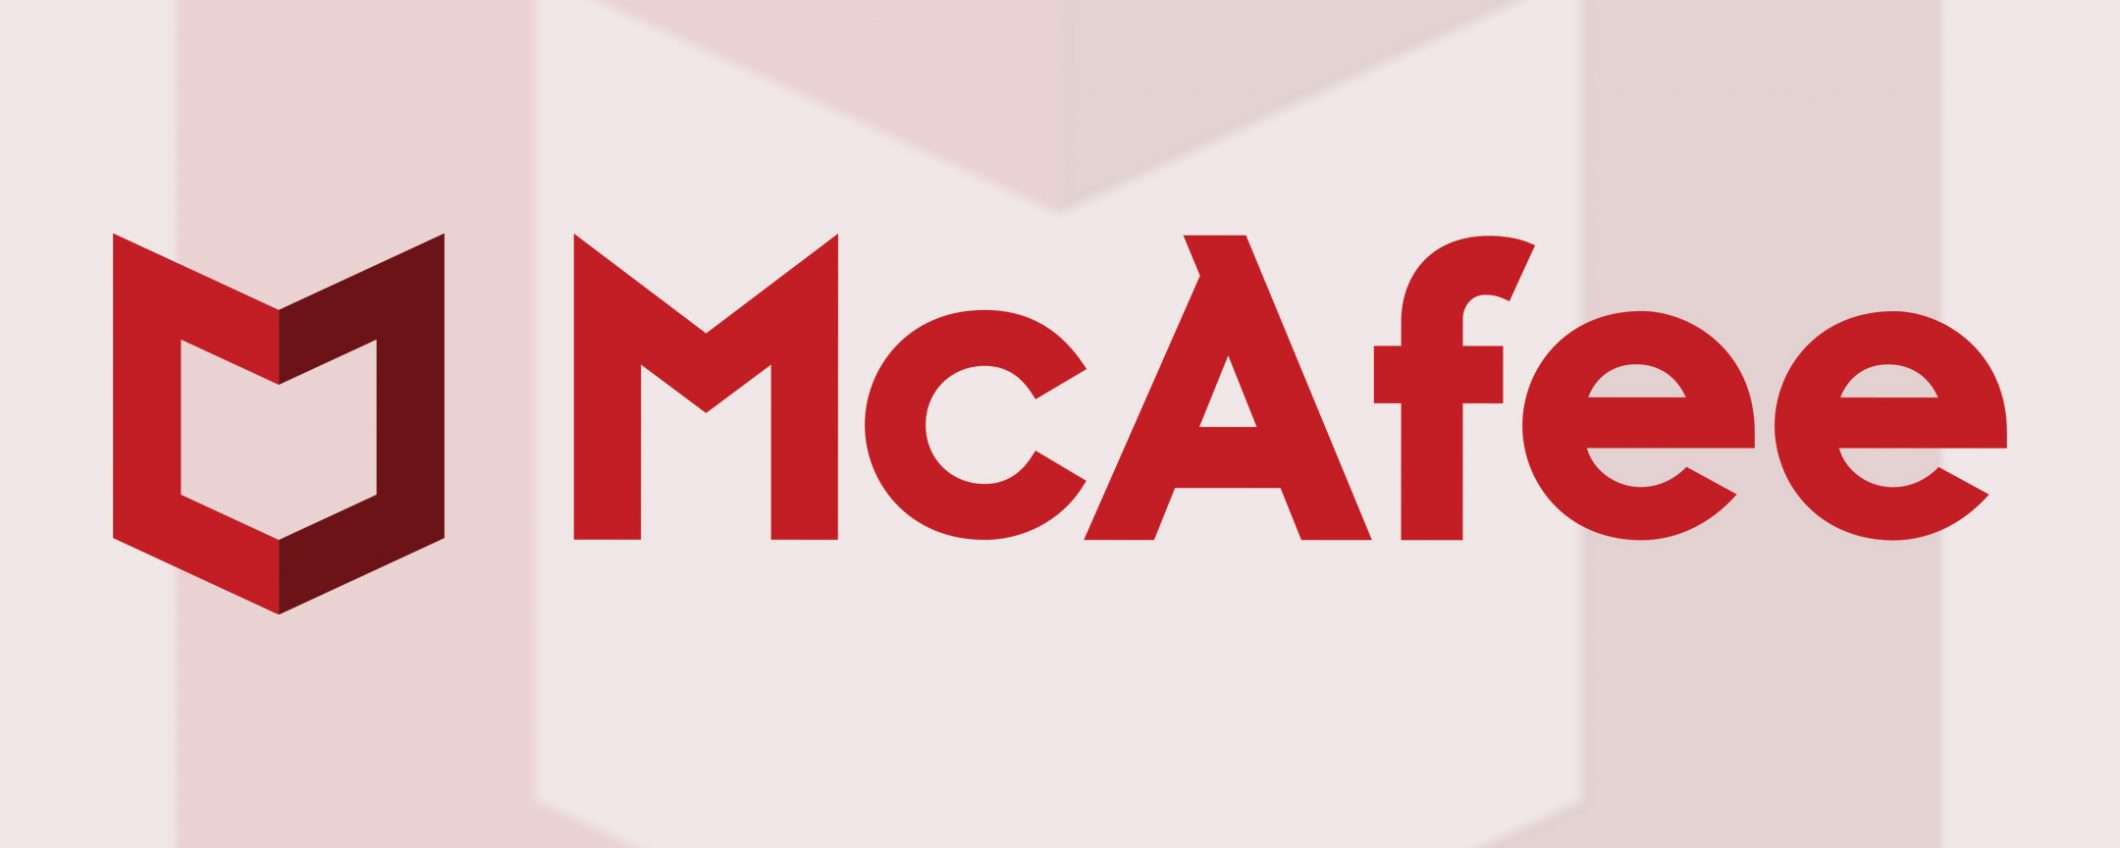 McAfee solo consumer: vende il business enterprise